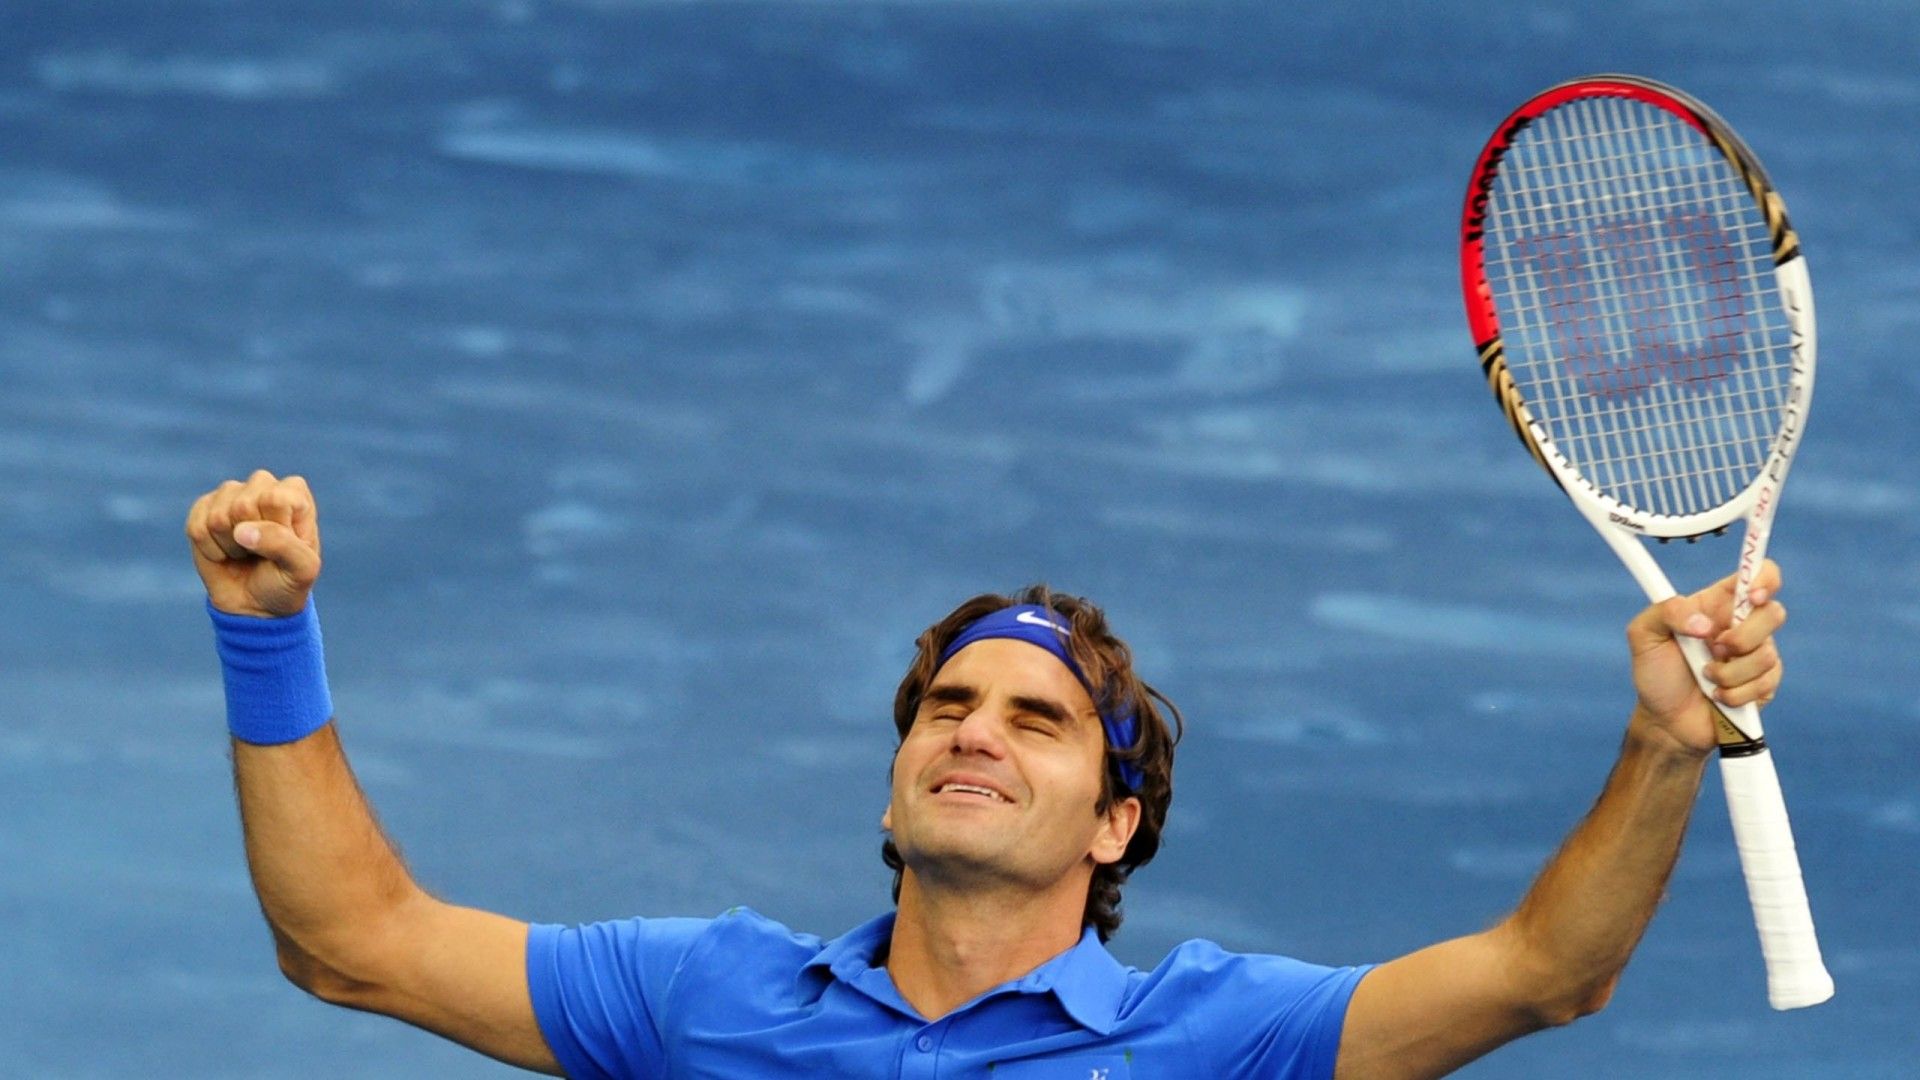 Roger Federer Hd Wallpapers - Roger Federer Image Download , HD Wallpaper & Backgrounds